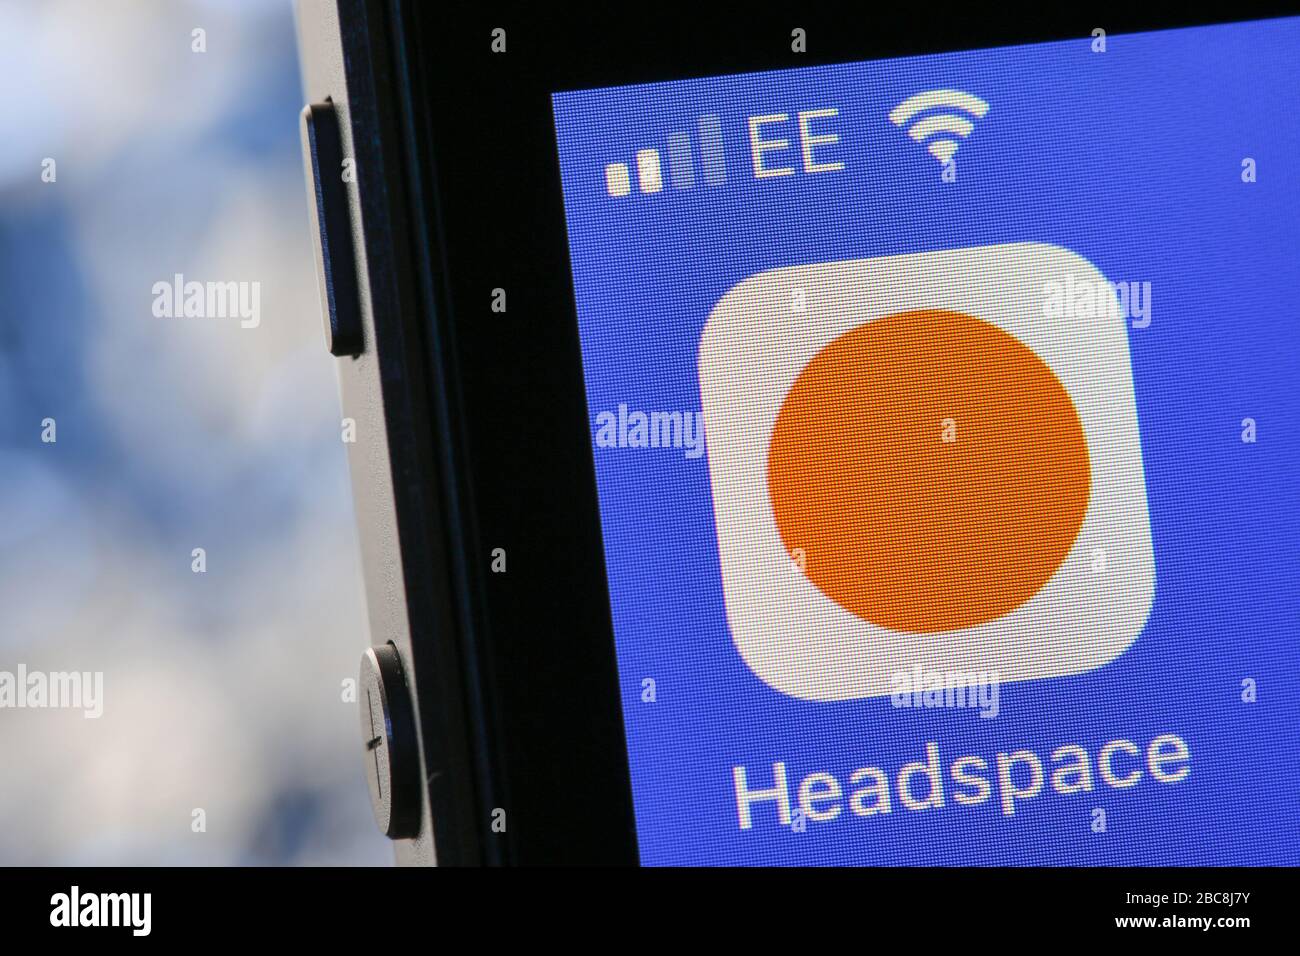 Application de méditation Headspace sur iPhone. Banque D'Images